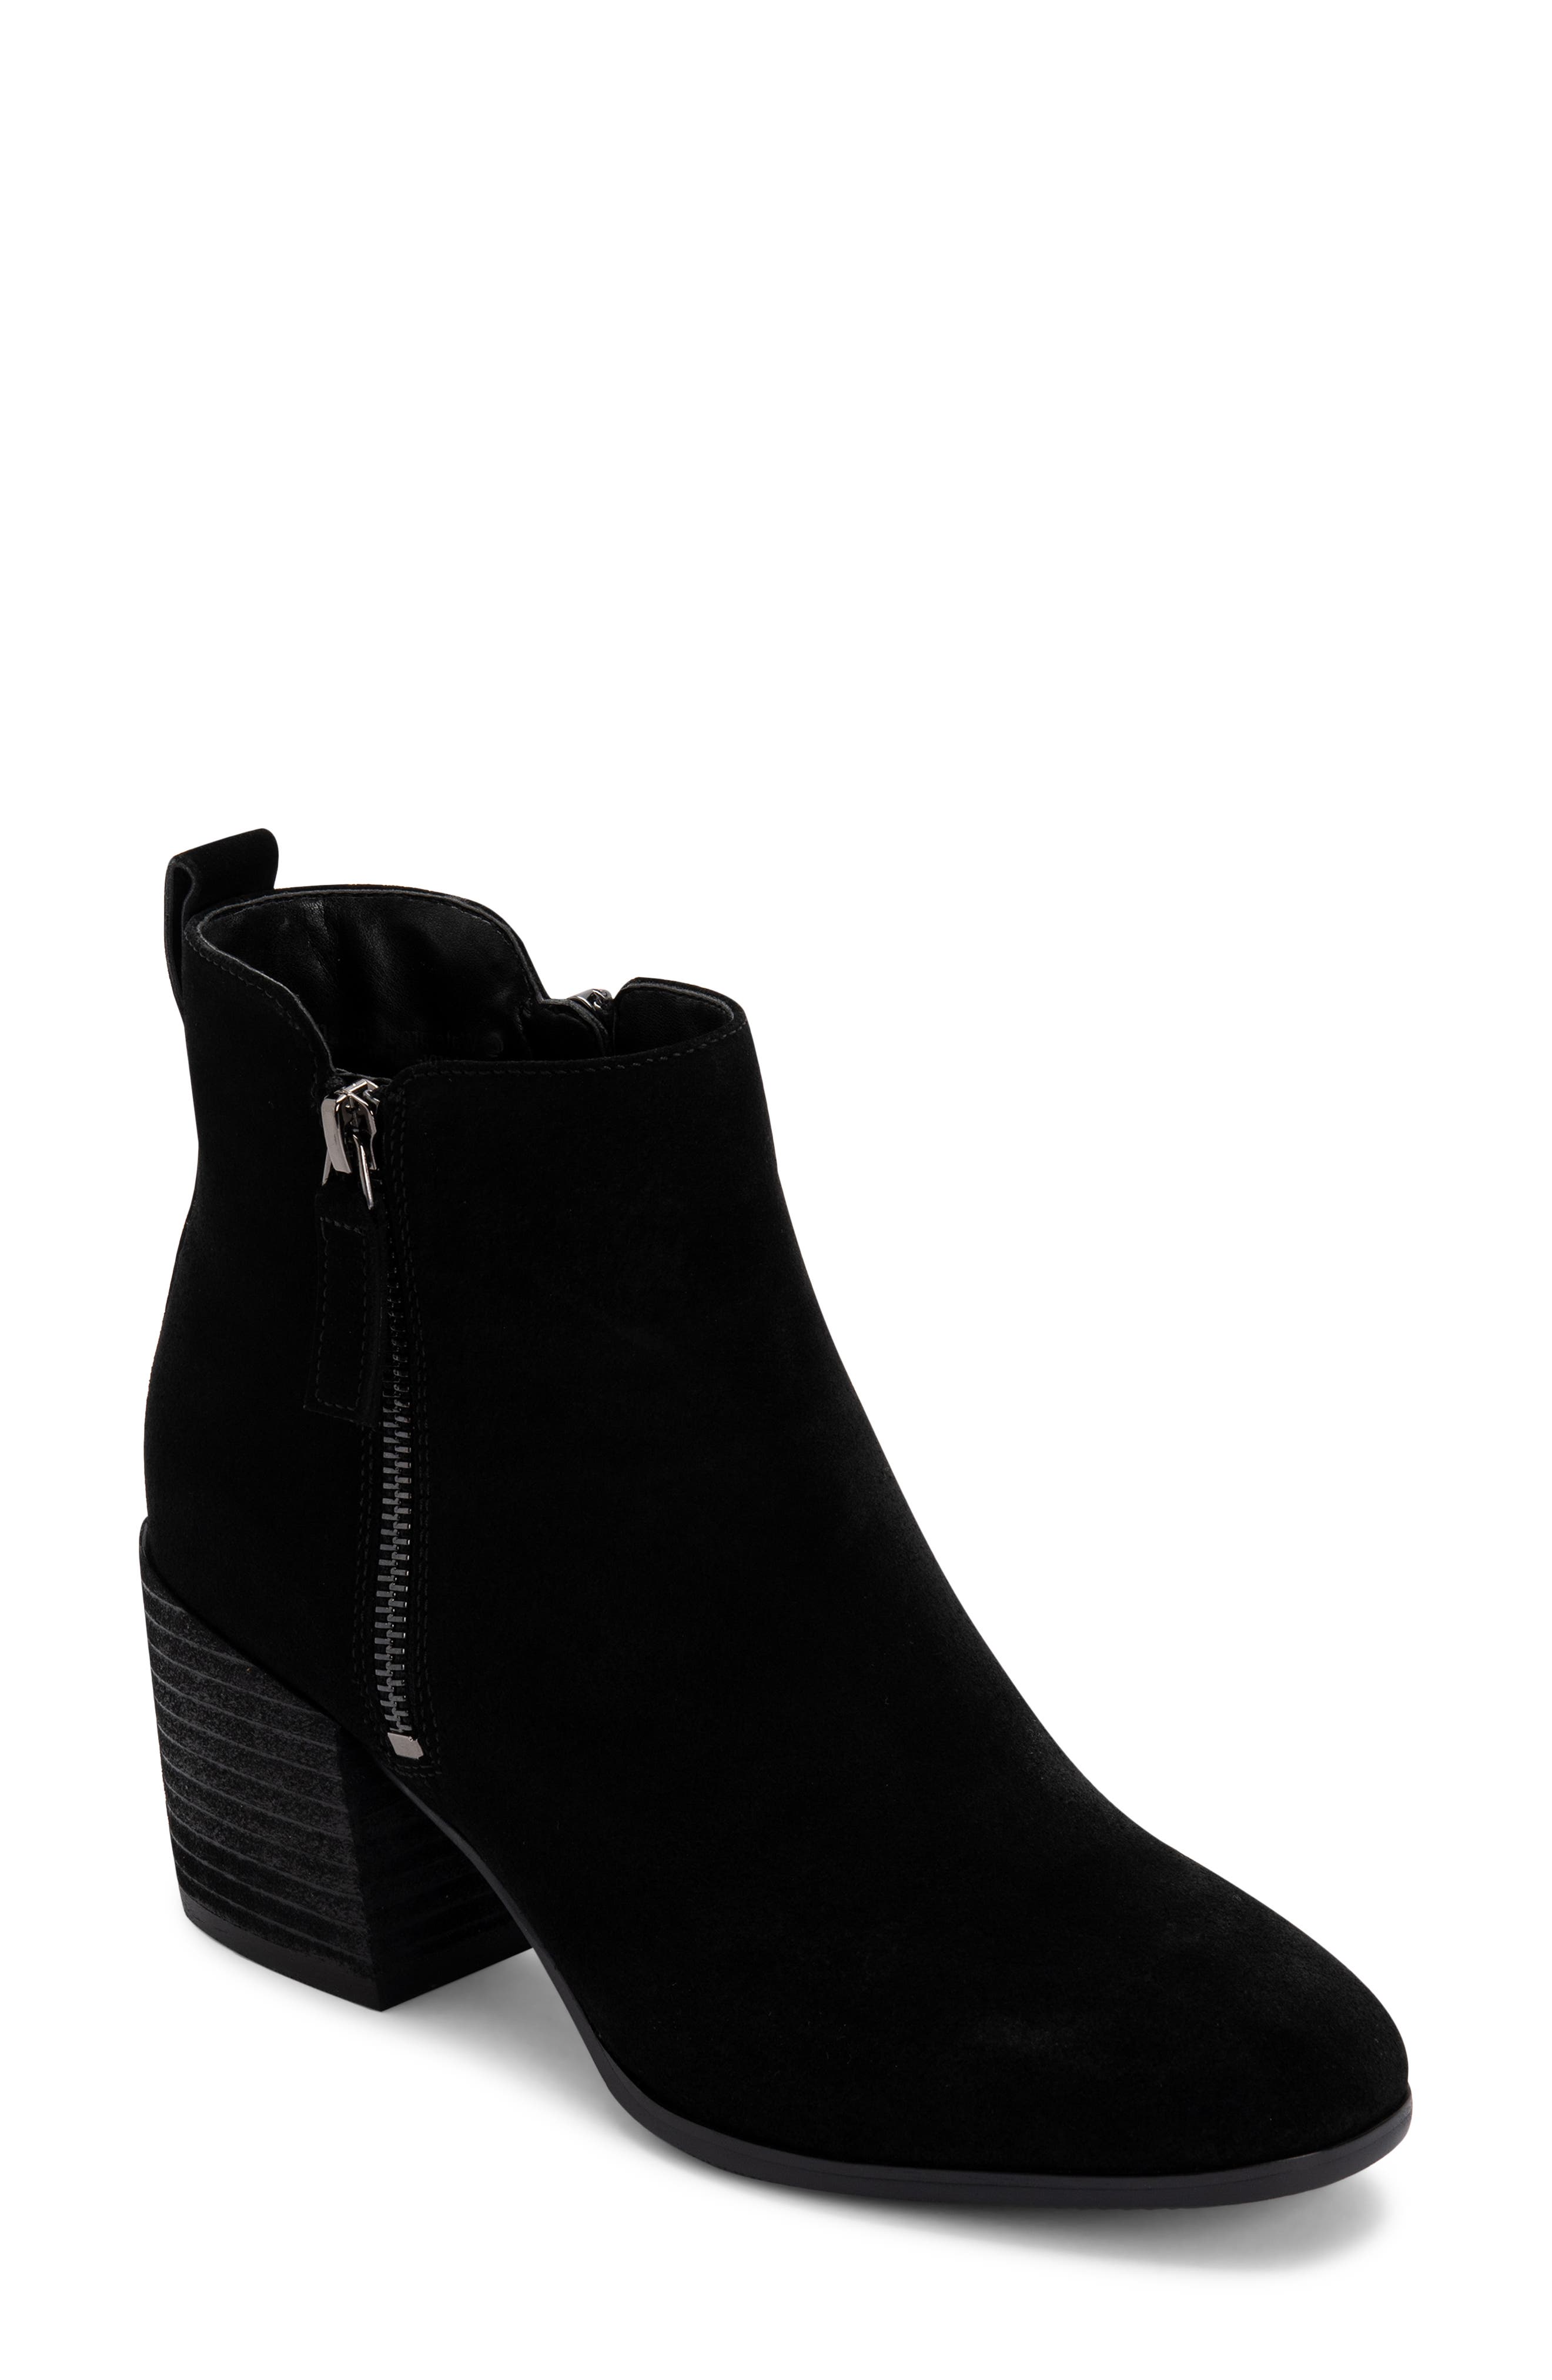 Buy > short black boots women > in stock